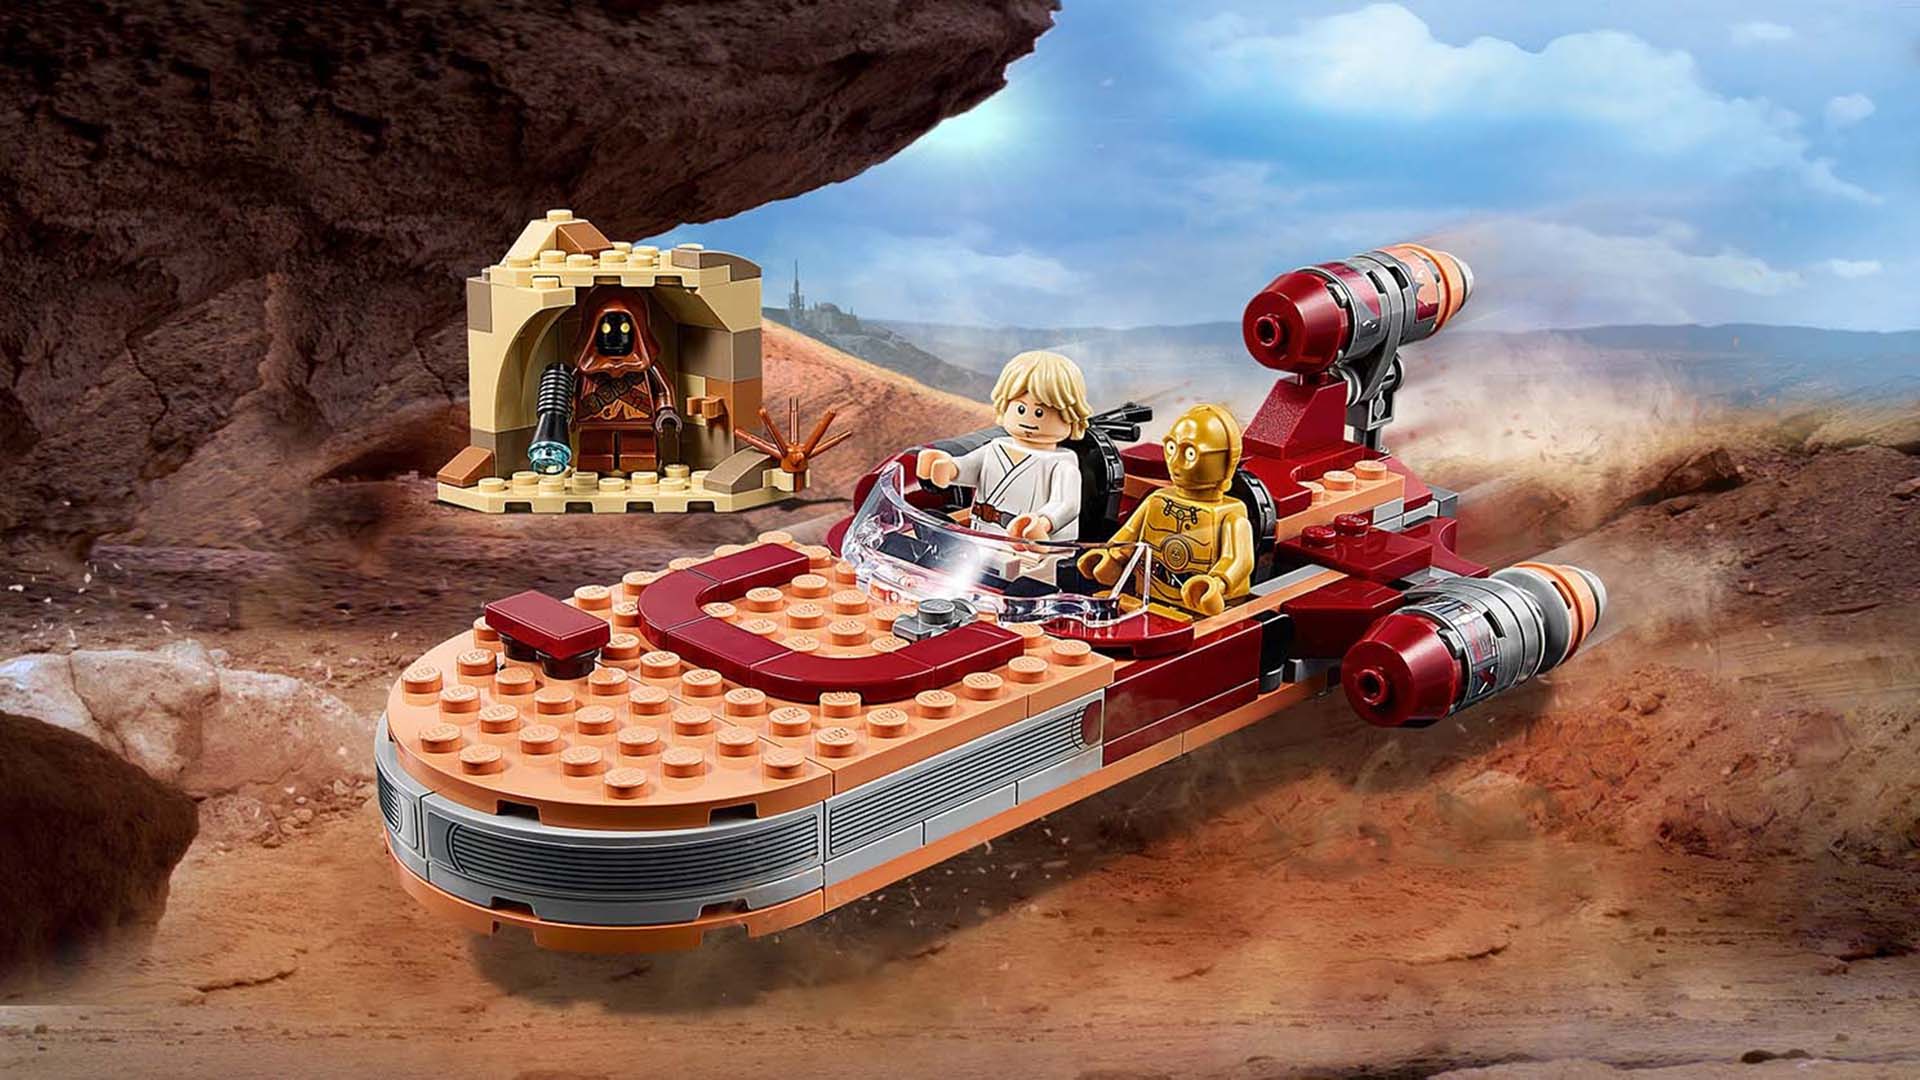 La empresa Lego festeja el día de Star Wars con un lanzamiento que integrará sus piezas para coleccionistas